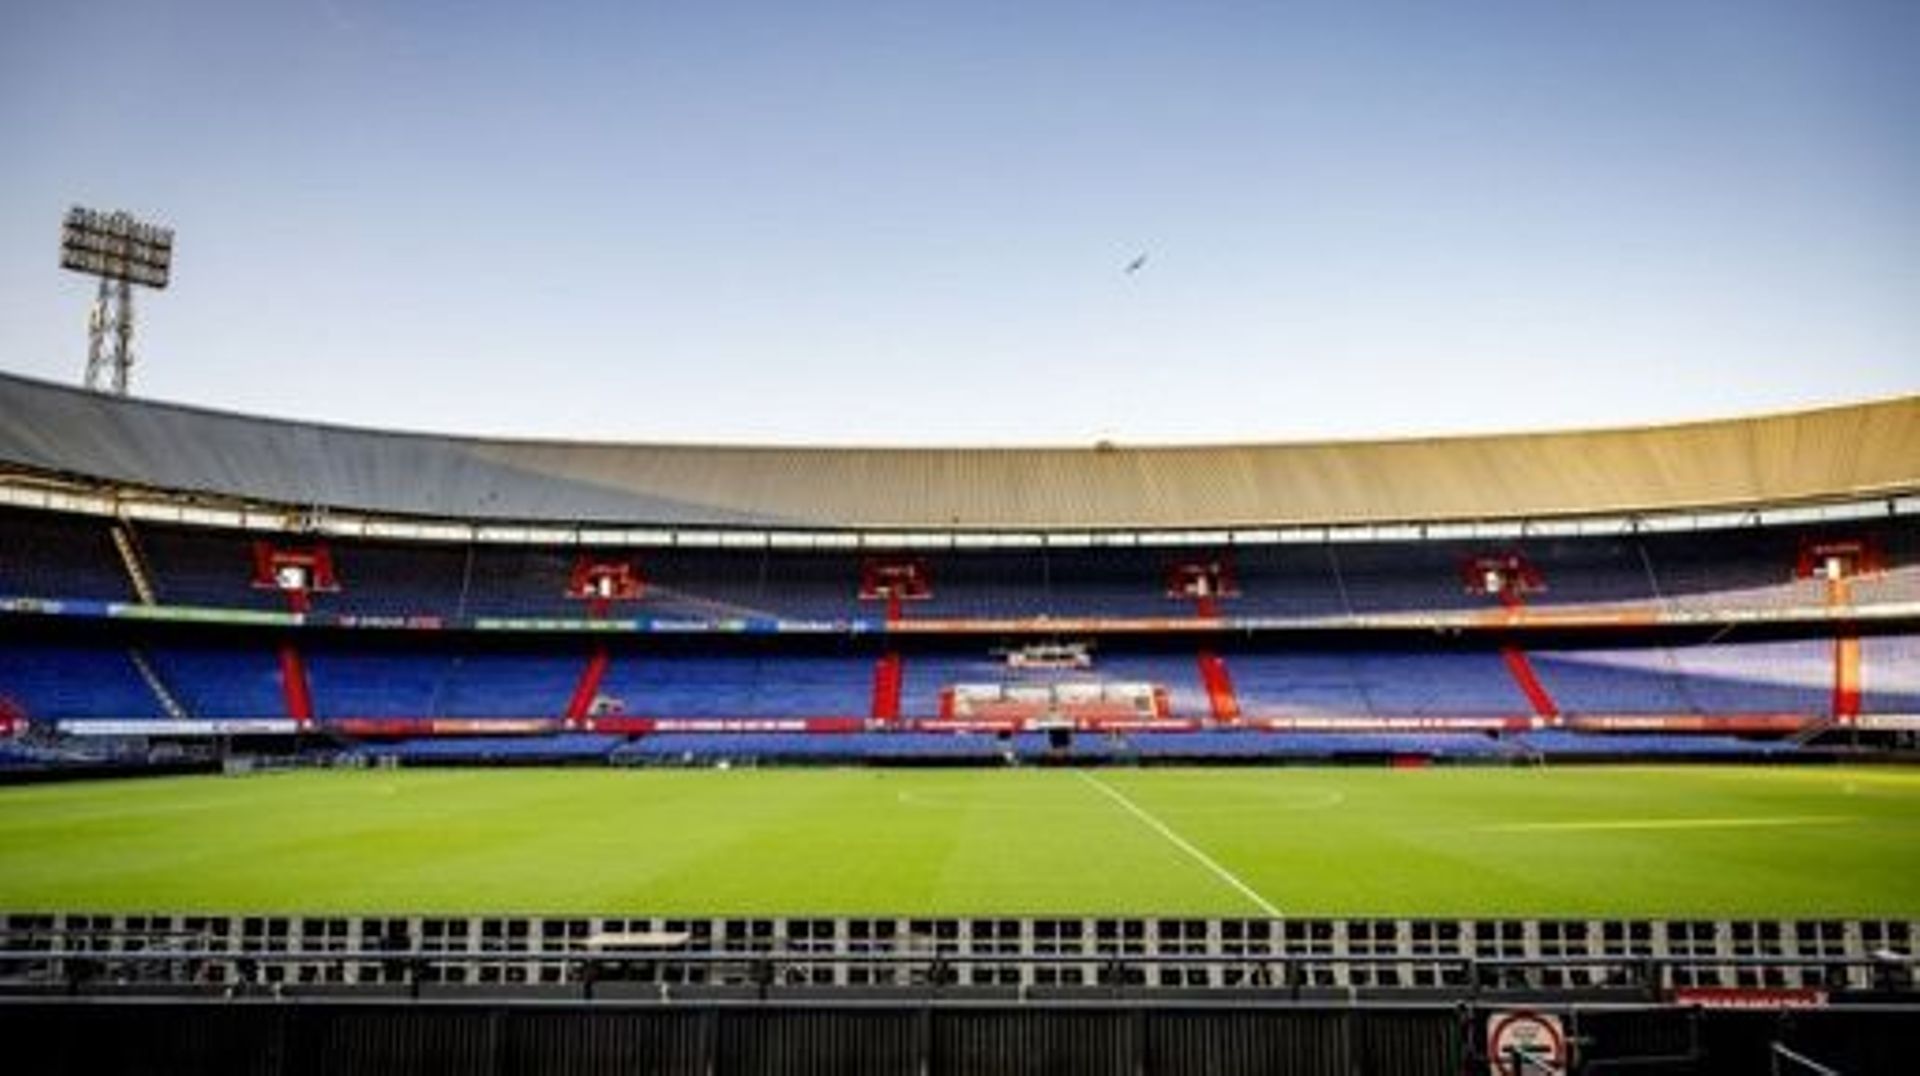 Le Final Four se jouera aux Pays-Bas du 14 au 18 juin 2023